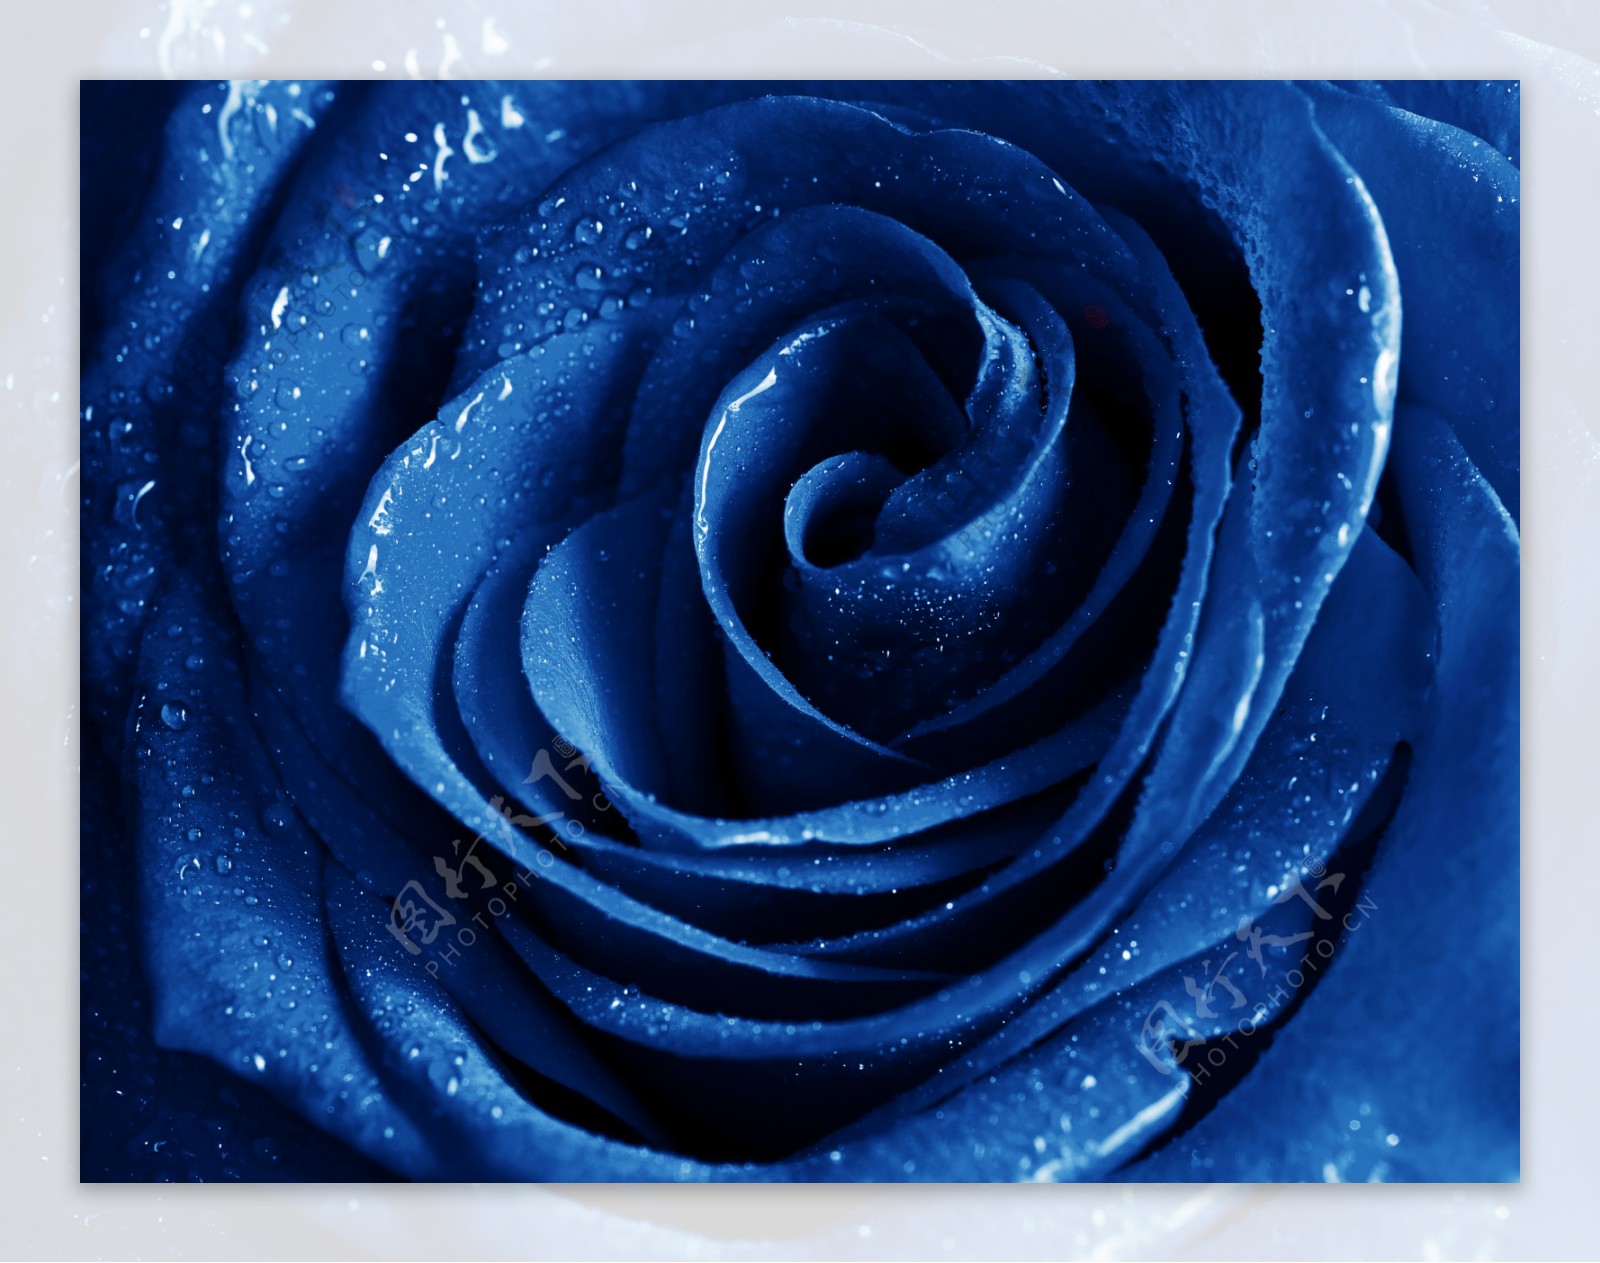 蓝色玫瑰花上的水珠图片